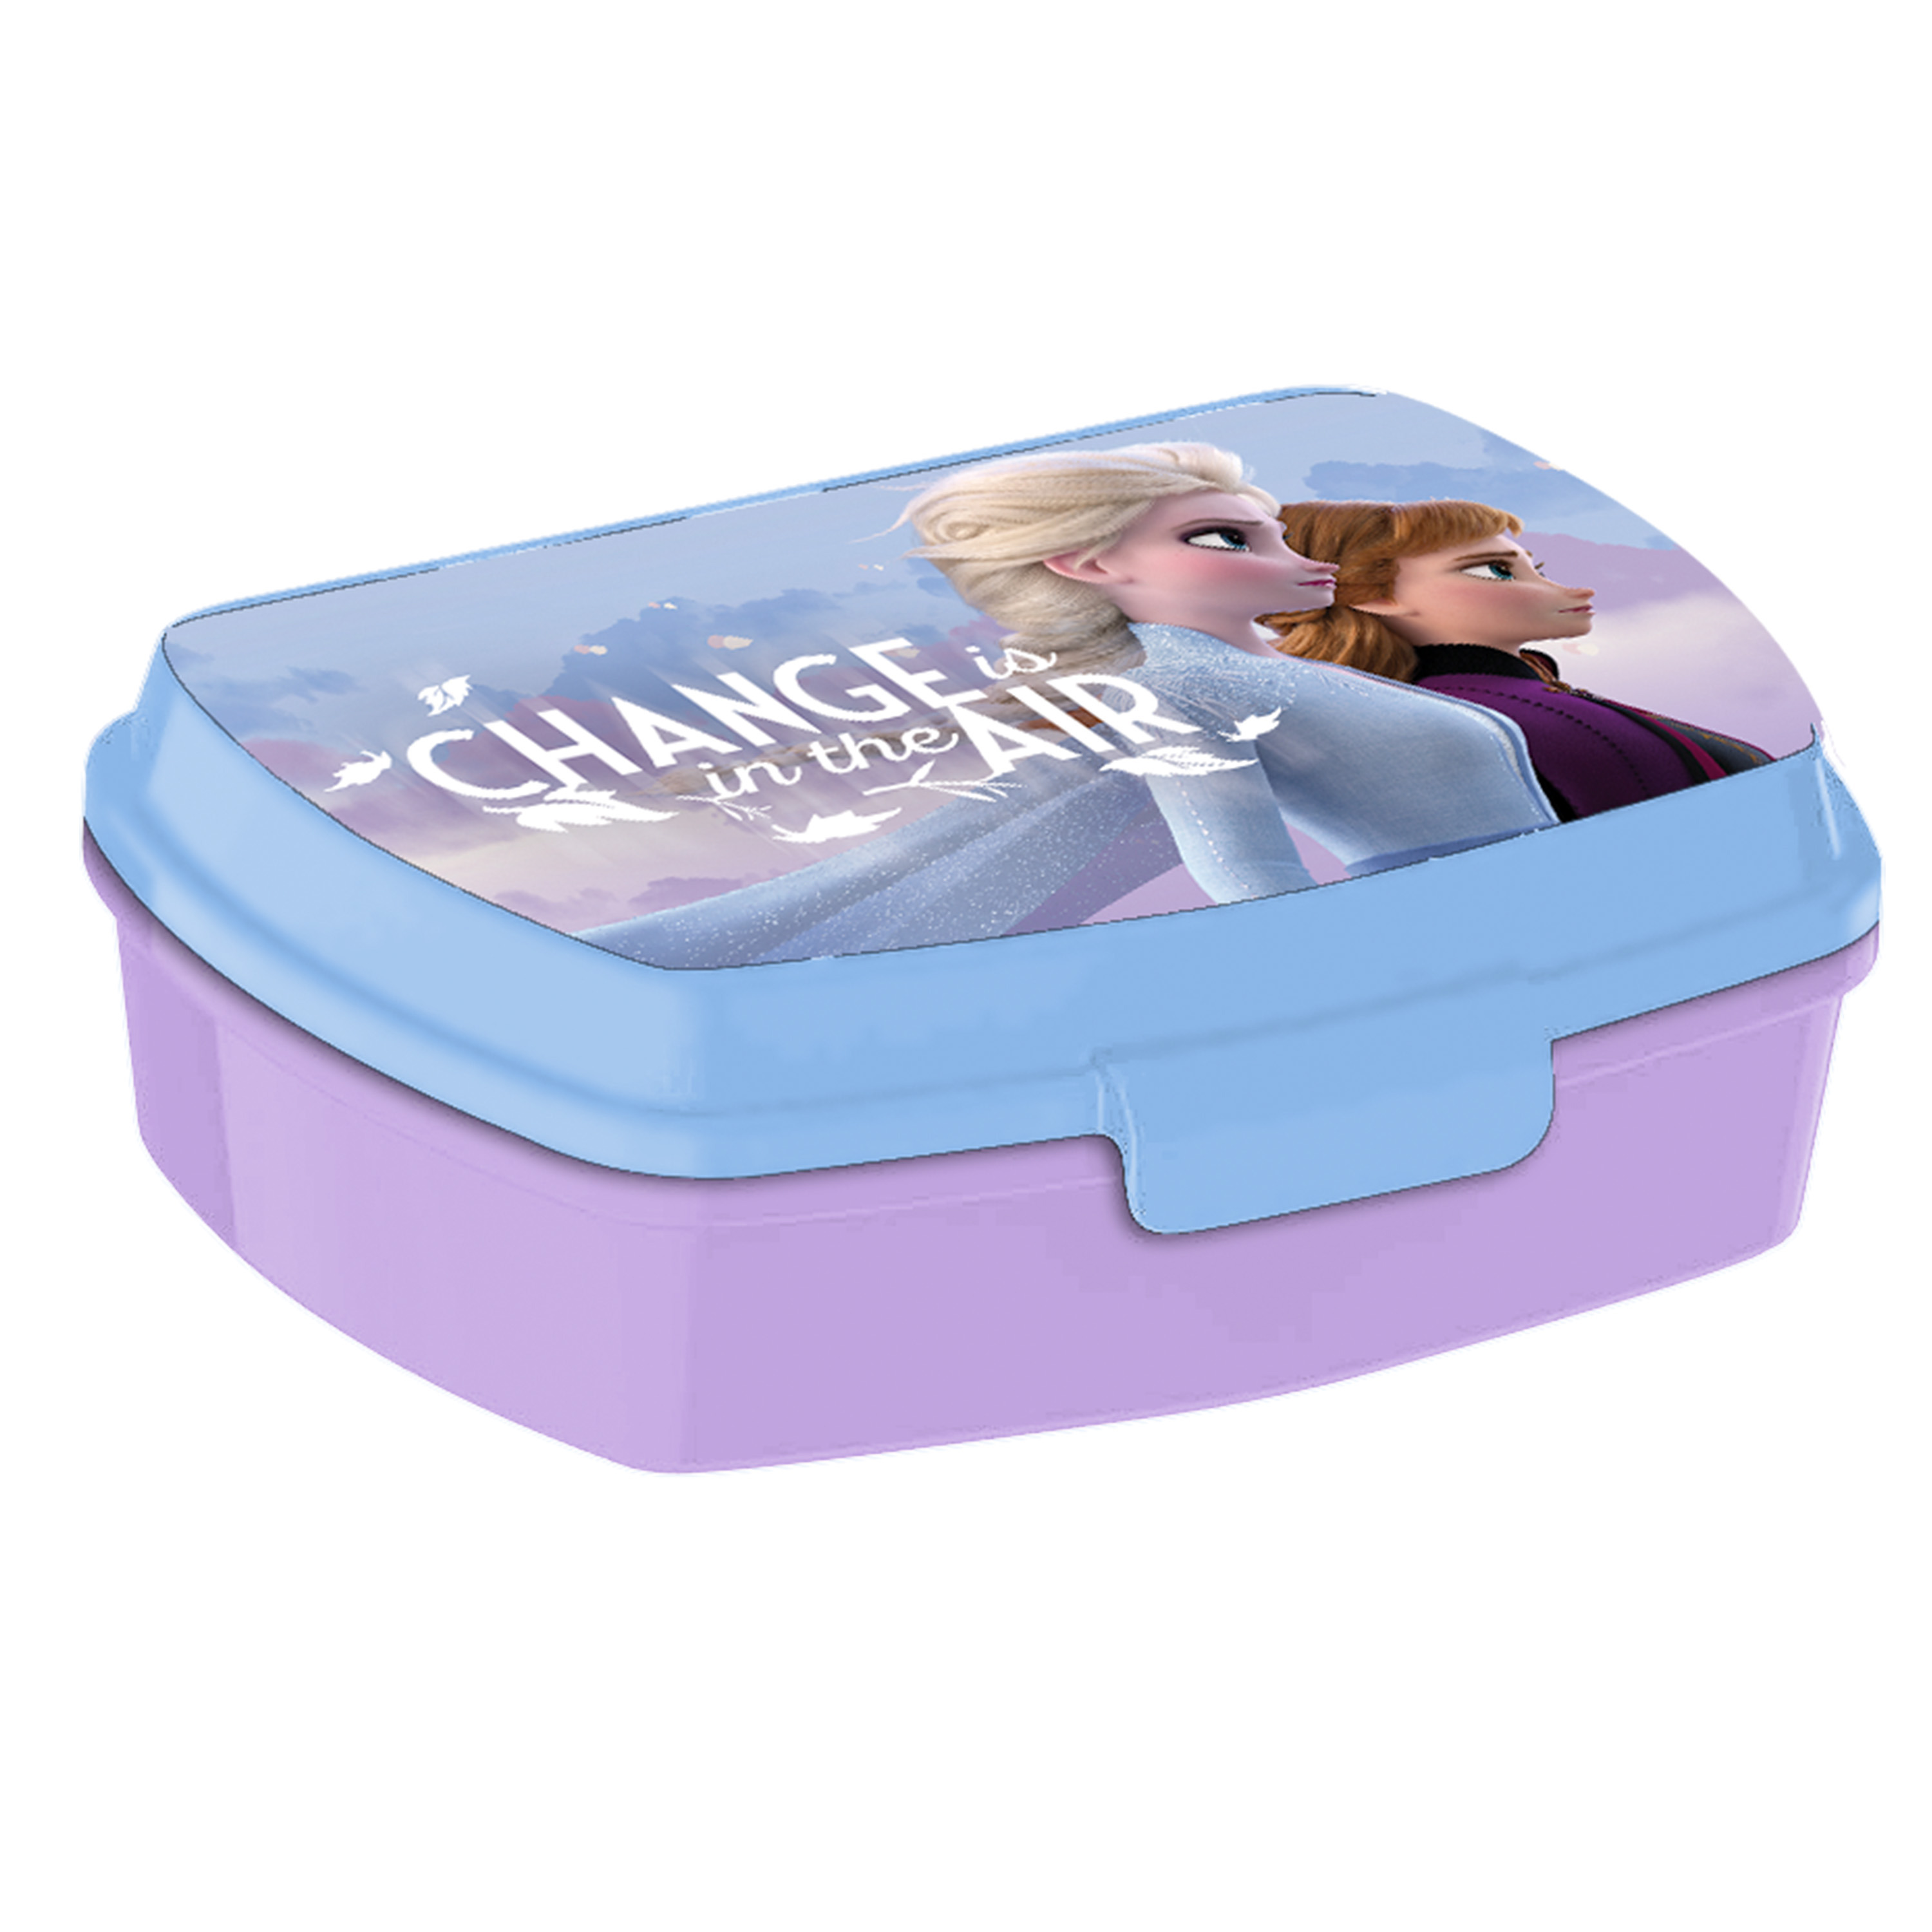 Disney Frozen broodtrommel-lunchbox voor kinderen lila kunststof 20 x 10 cm